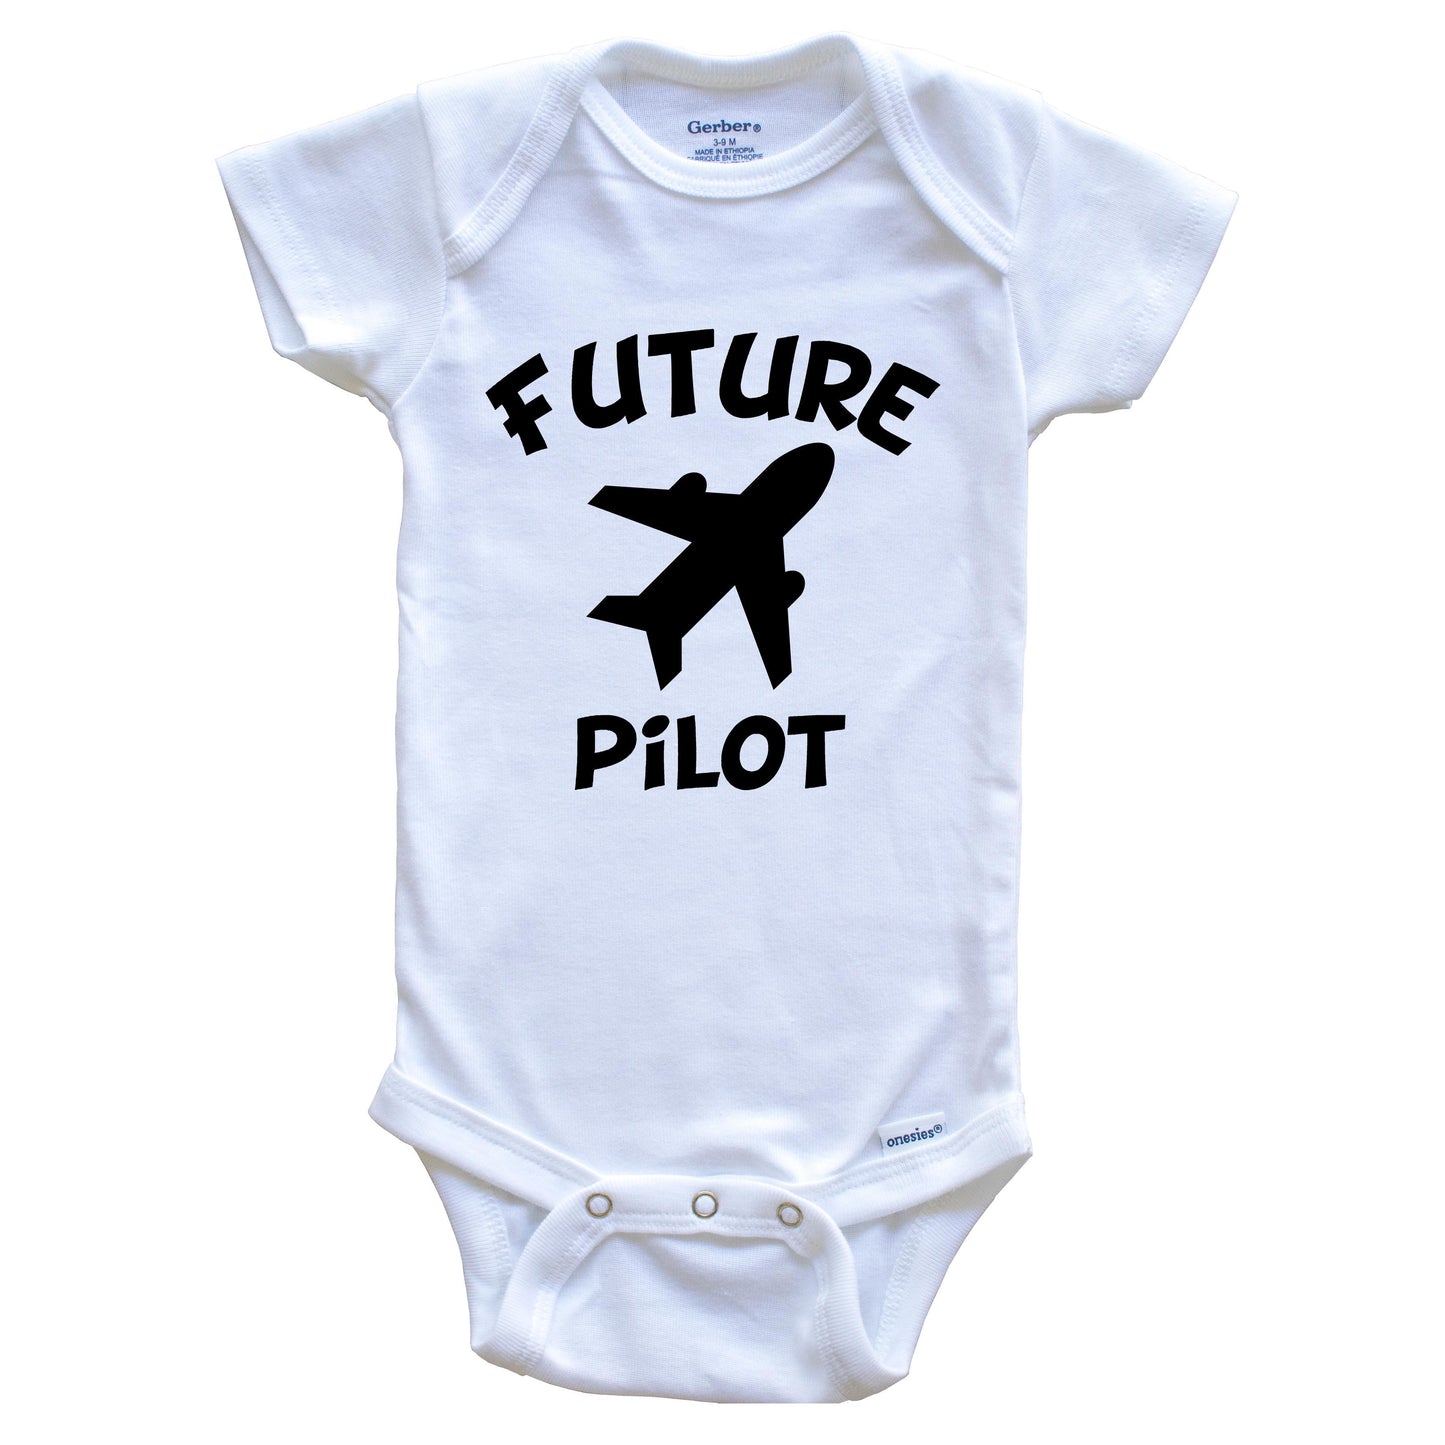 Future Pilot Cute Airplane Baby Onesie - One Piece Baby Bodysuit